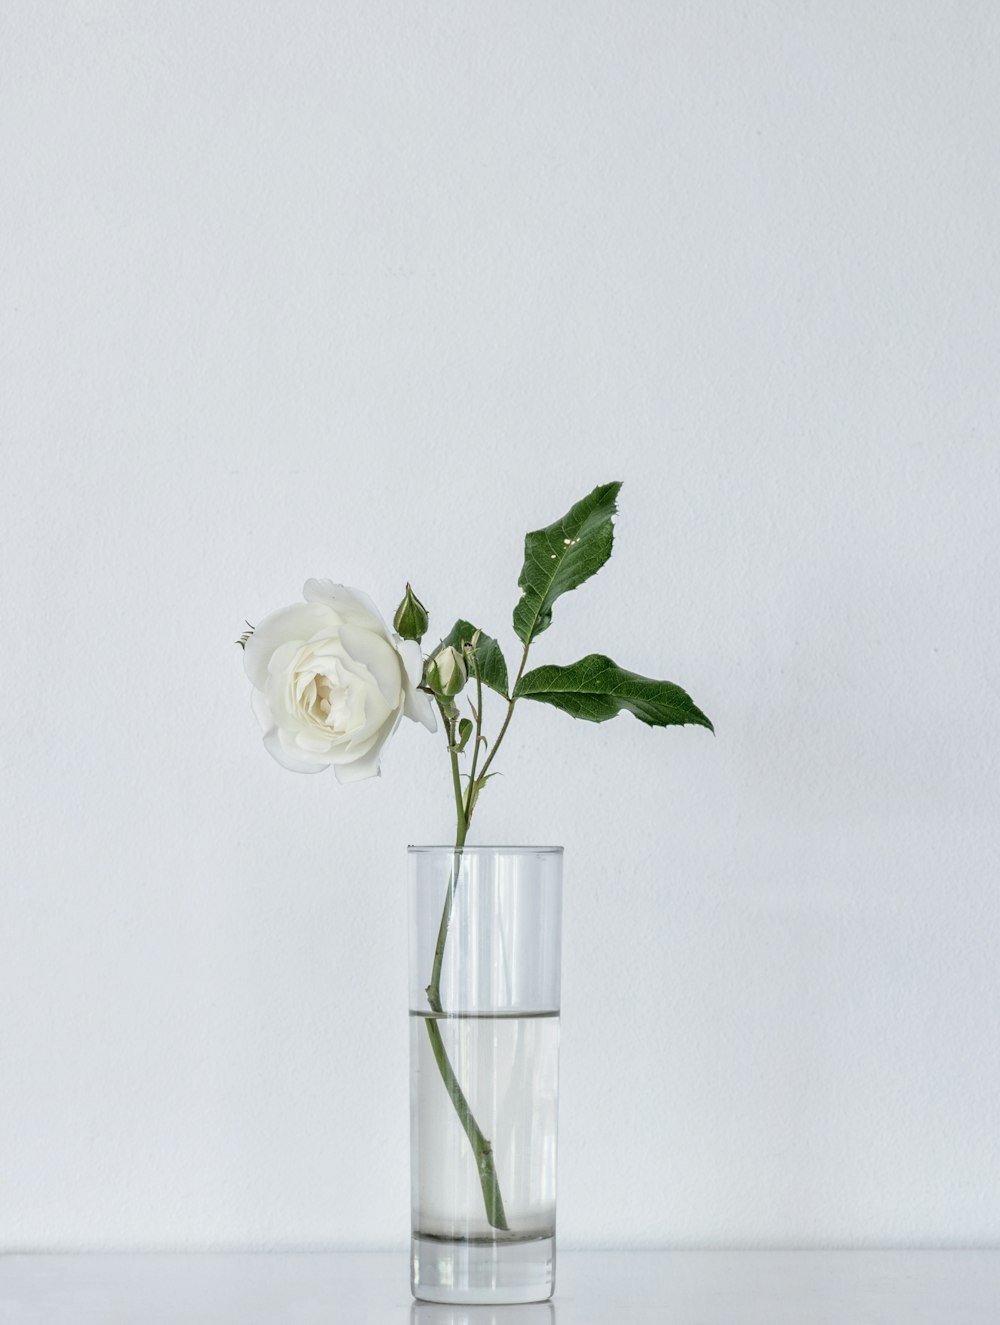 rosa blanca sobre jarrón de vidrio